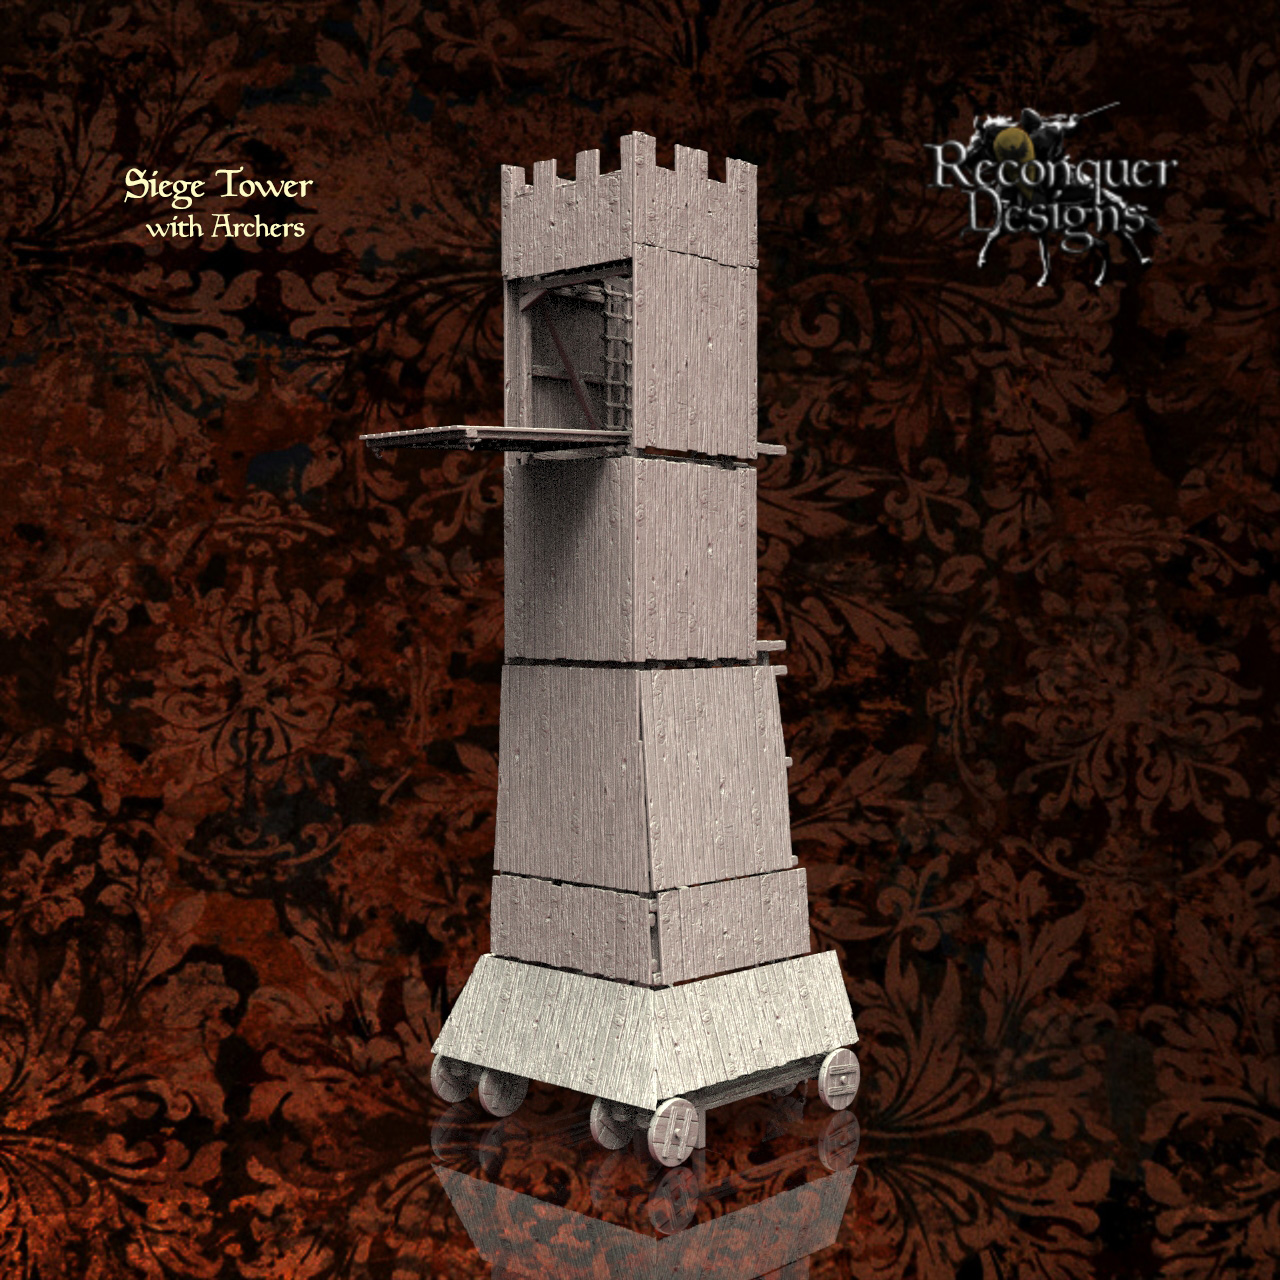 medieval siege tower